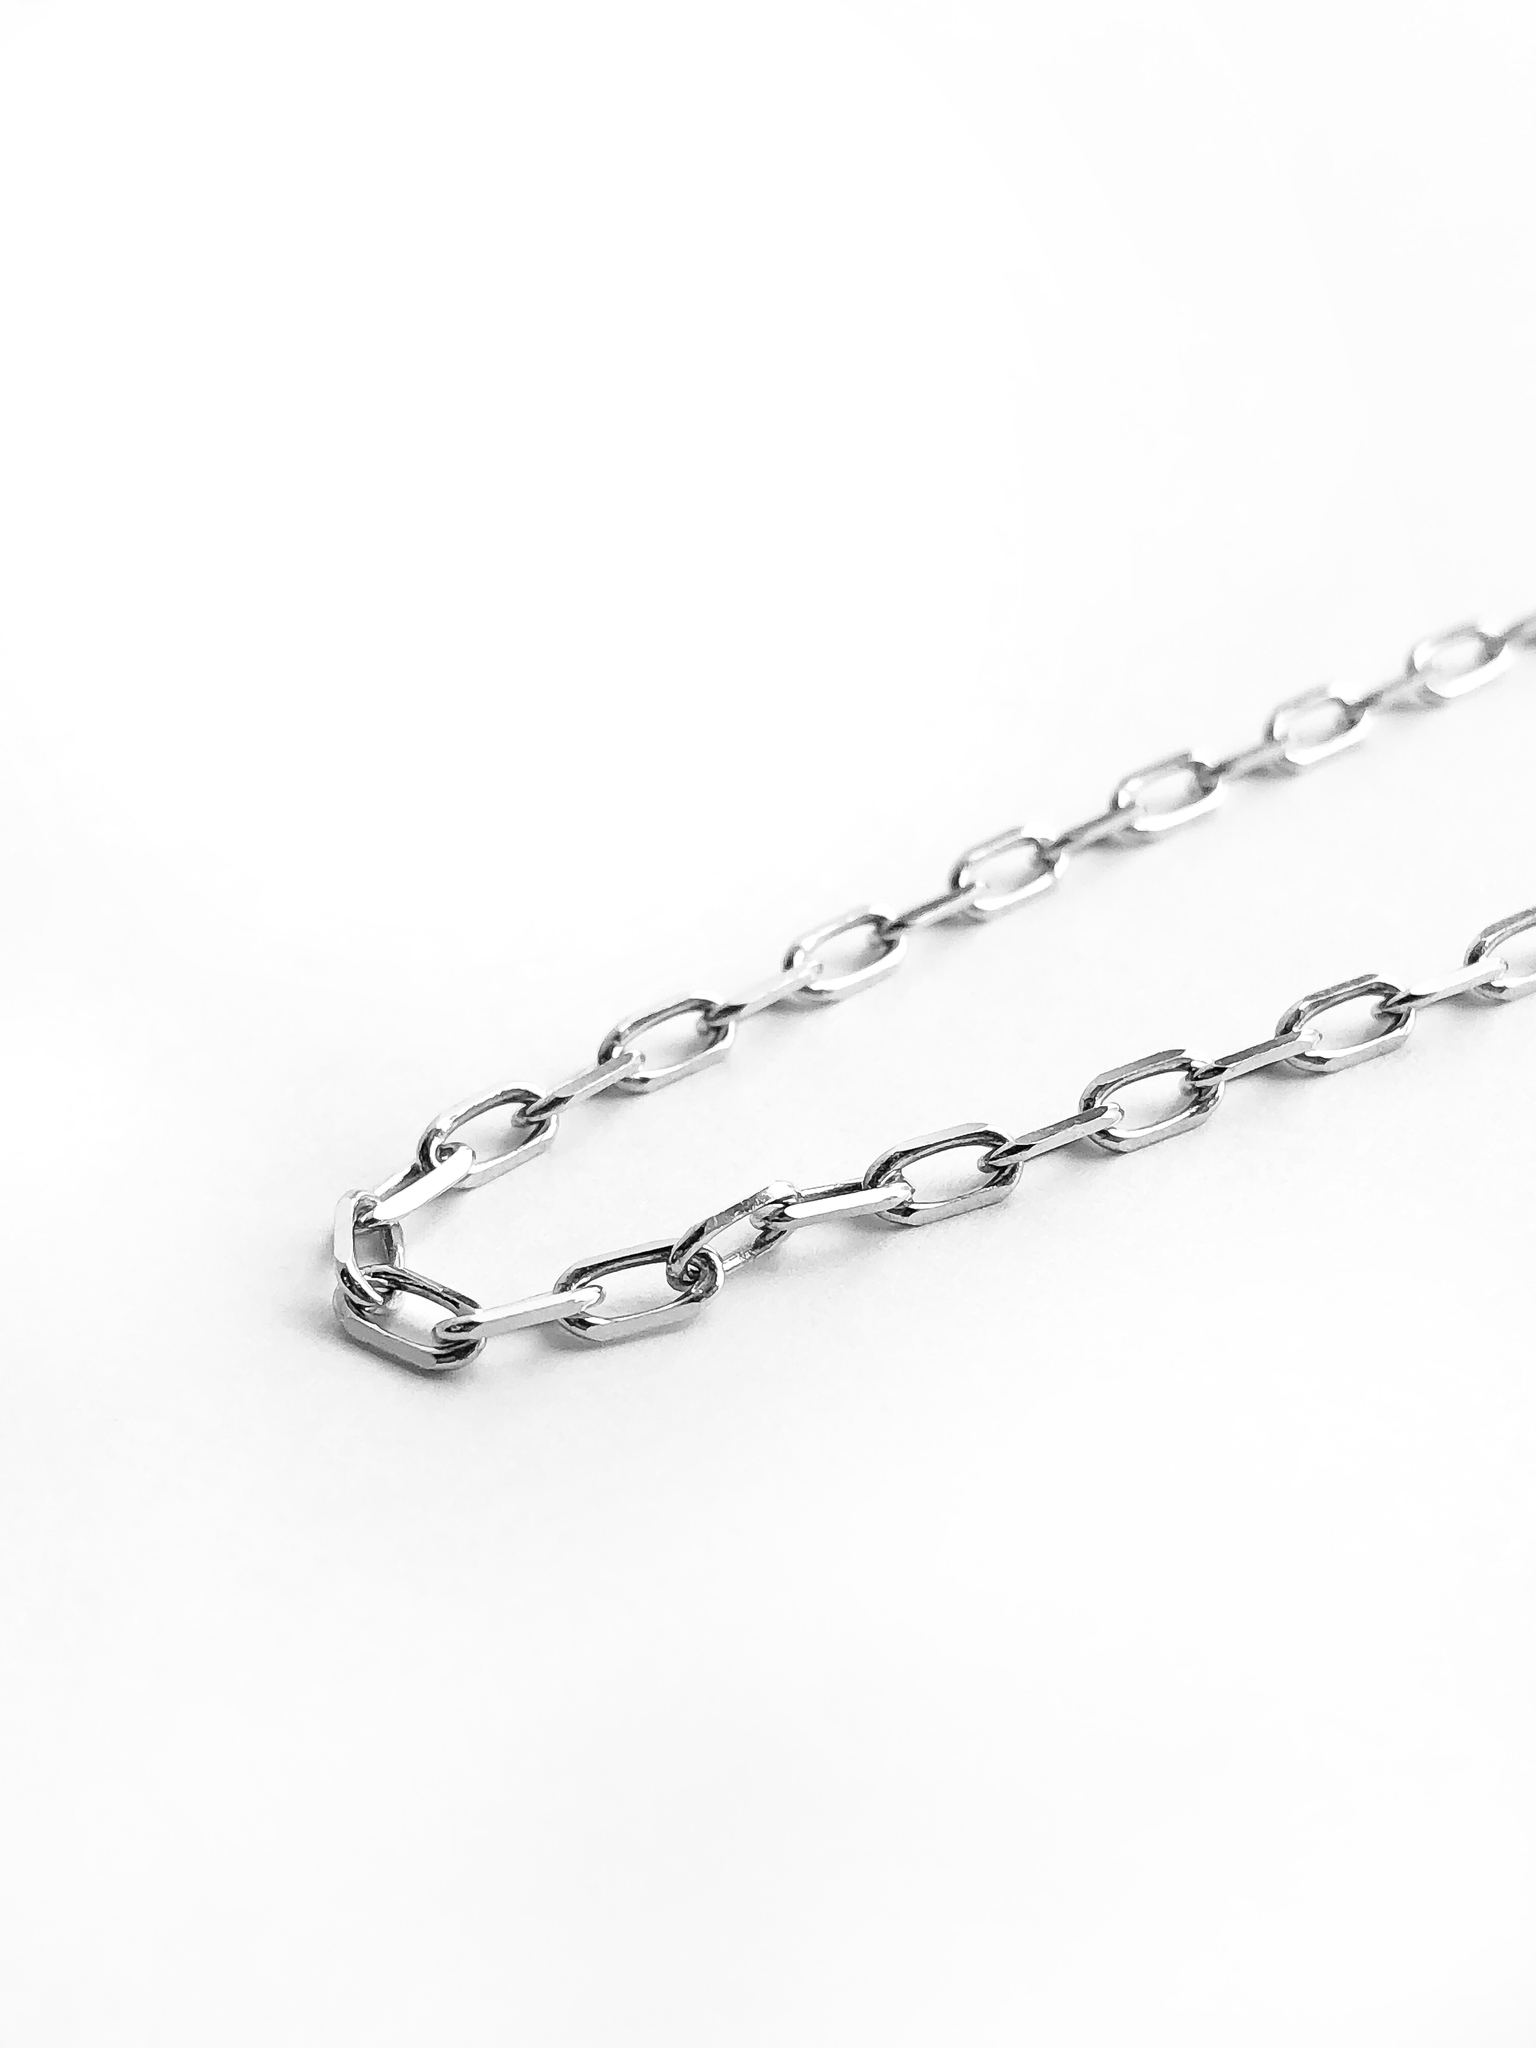 Серебряная цепочка «Якорное плетение» с крупными звеньями